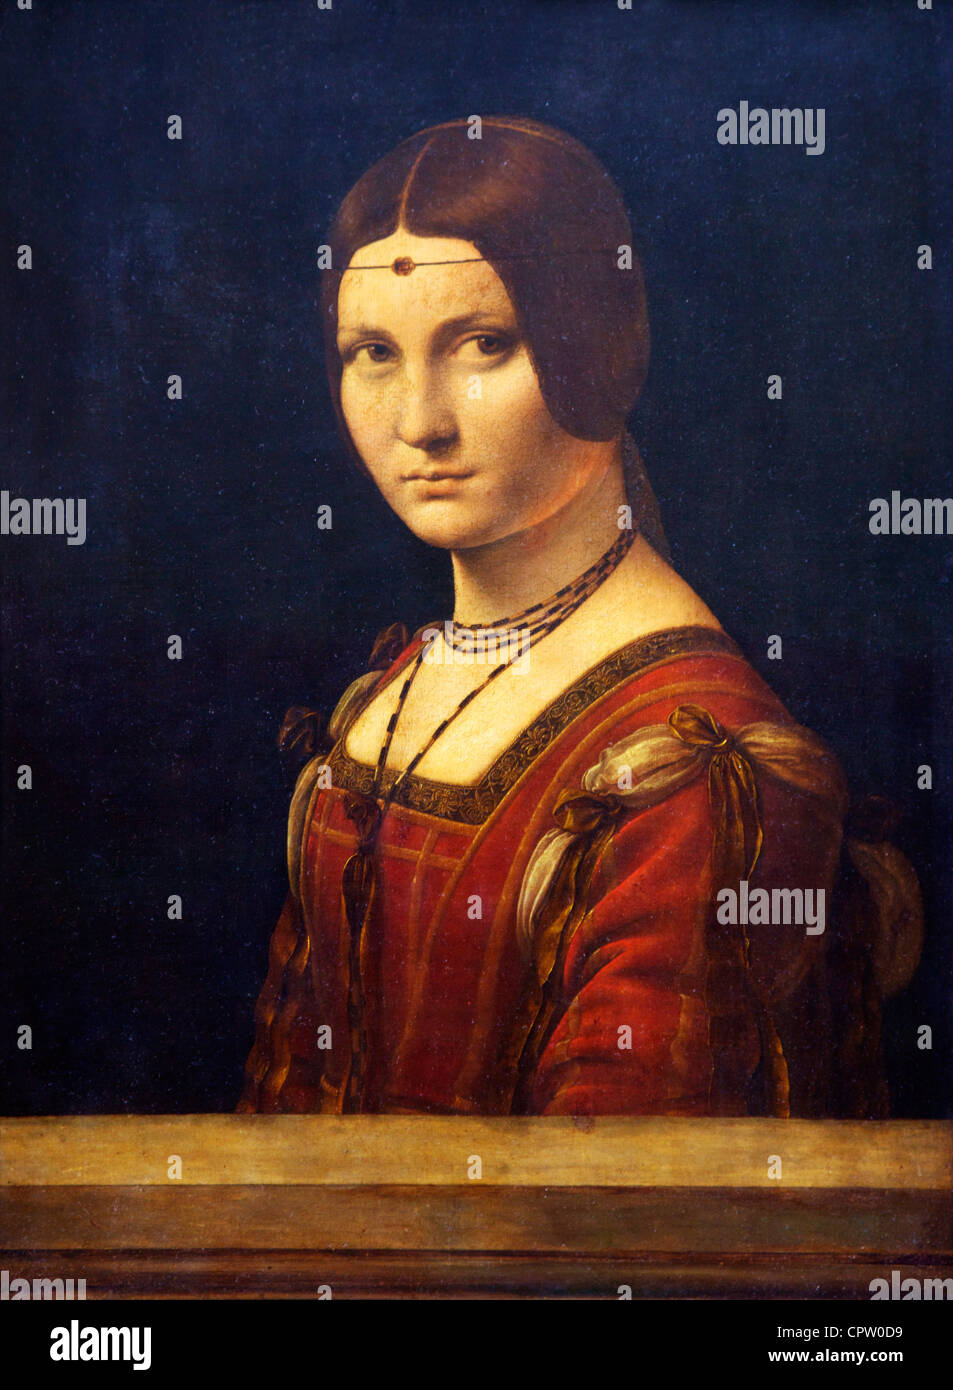 Portrait d'une femme, La Belle Ferronniere, par Leonardo da Vinci, 1497, Musée du Louvre, Paris, France, Europe, UNION EUROPÉENNE Banque D'Images